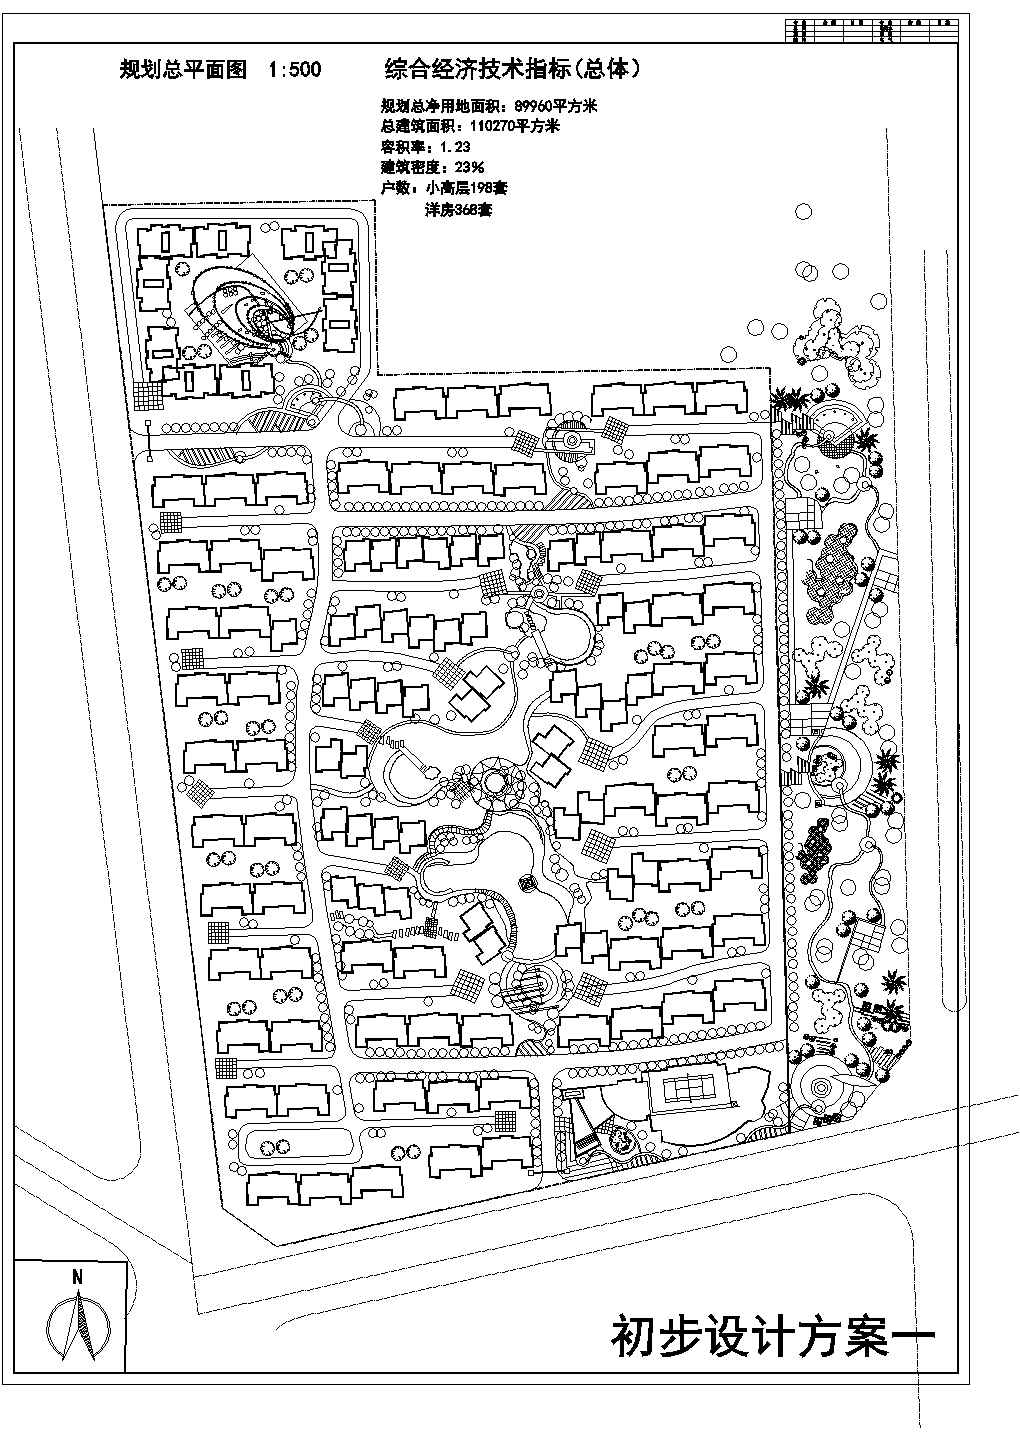 蝴蝶城小区规划方案图